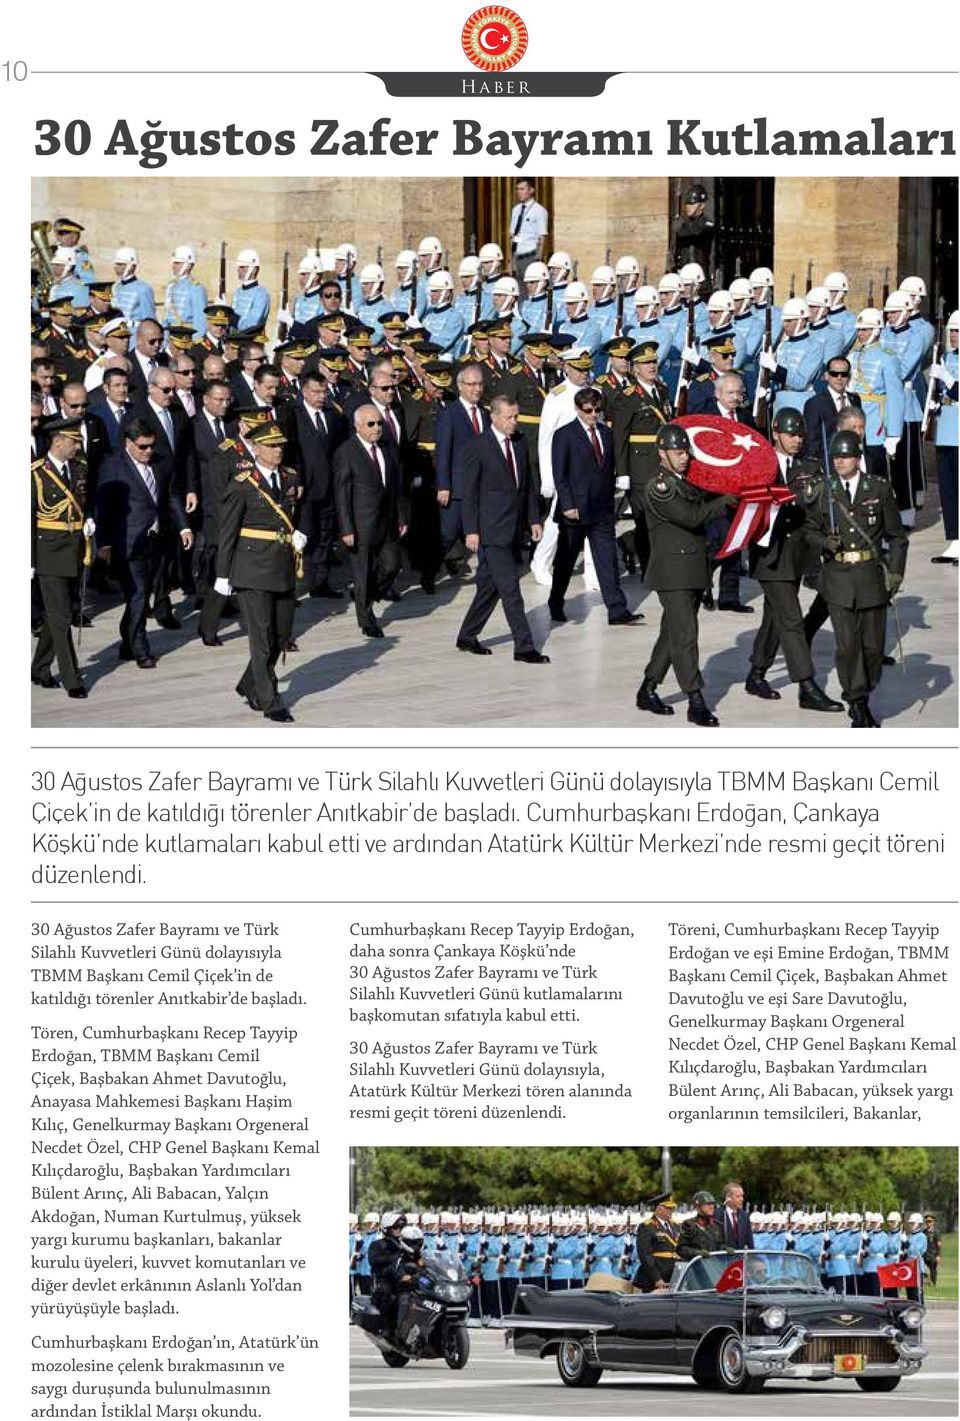 30 Ağustos Zafer Bayramı ve Türk Silahlı Kuvvetleri Günü dolayısıyla TBMM Başkanı Cemil Çiçek in de katıldığı törenler Anıtkabir de başladı.